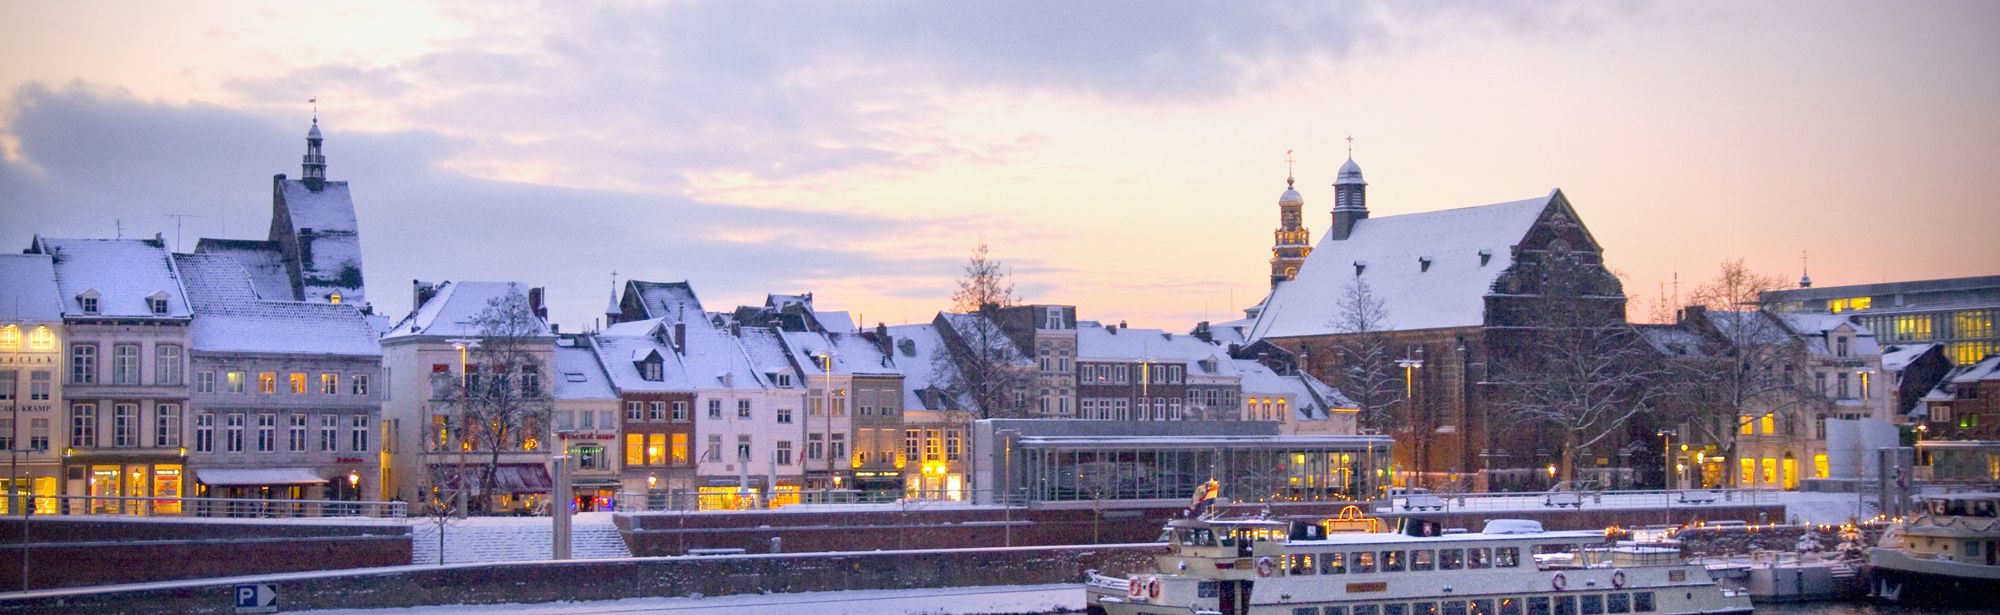 Uitzicht over de Maas en de stad Maastricht in de winter